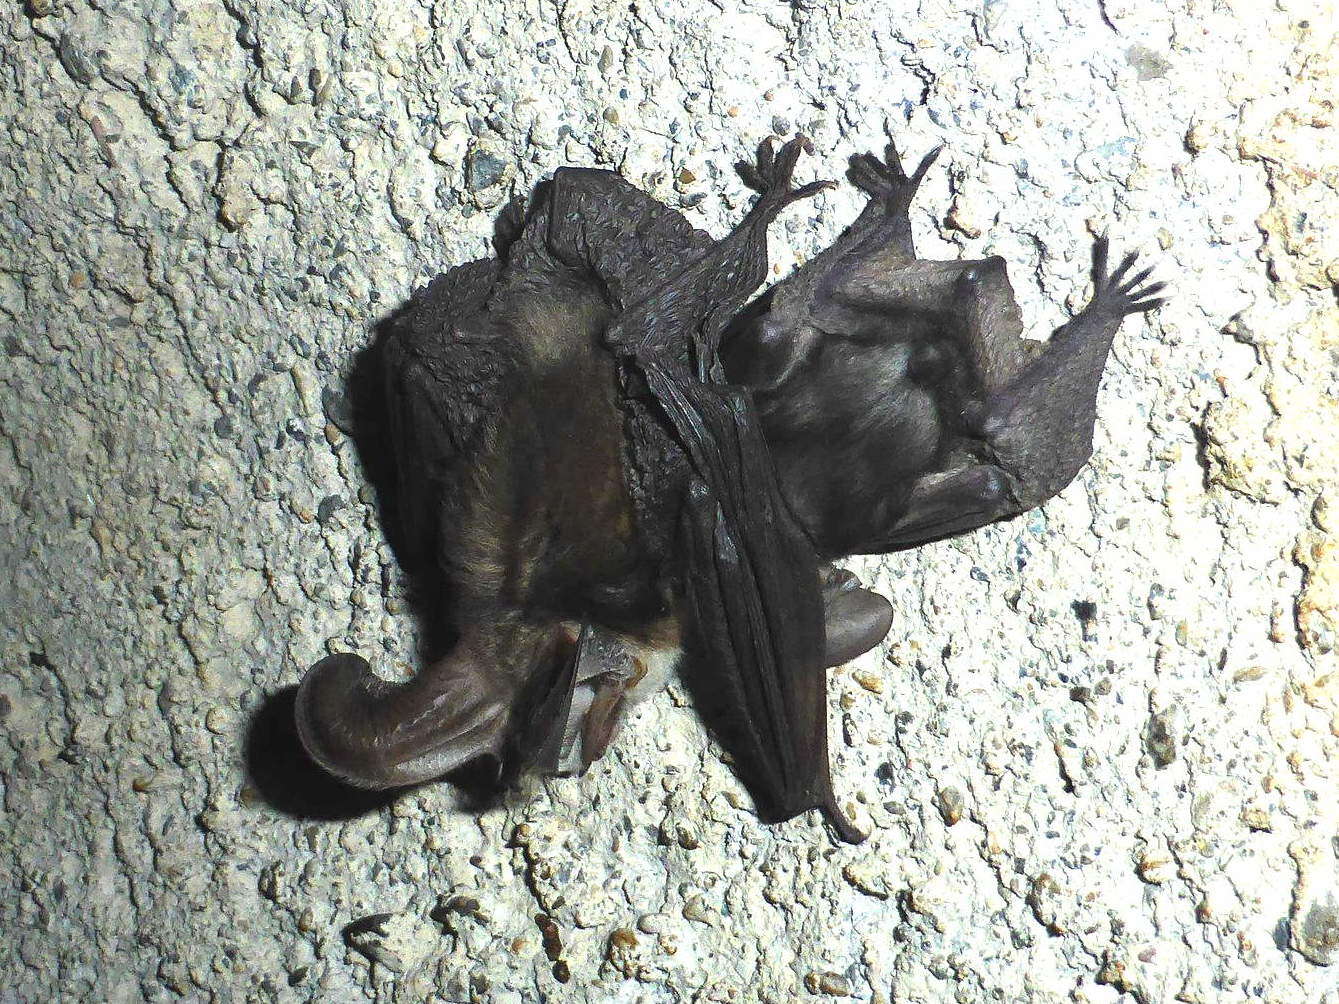 Image of Mountain Long-eared Bat